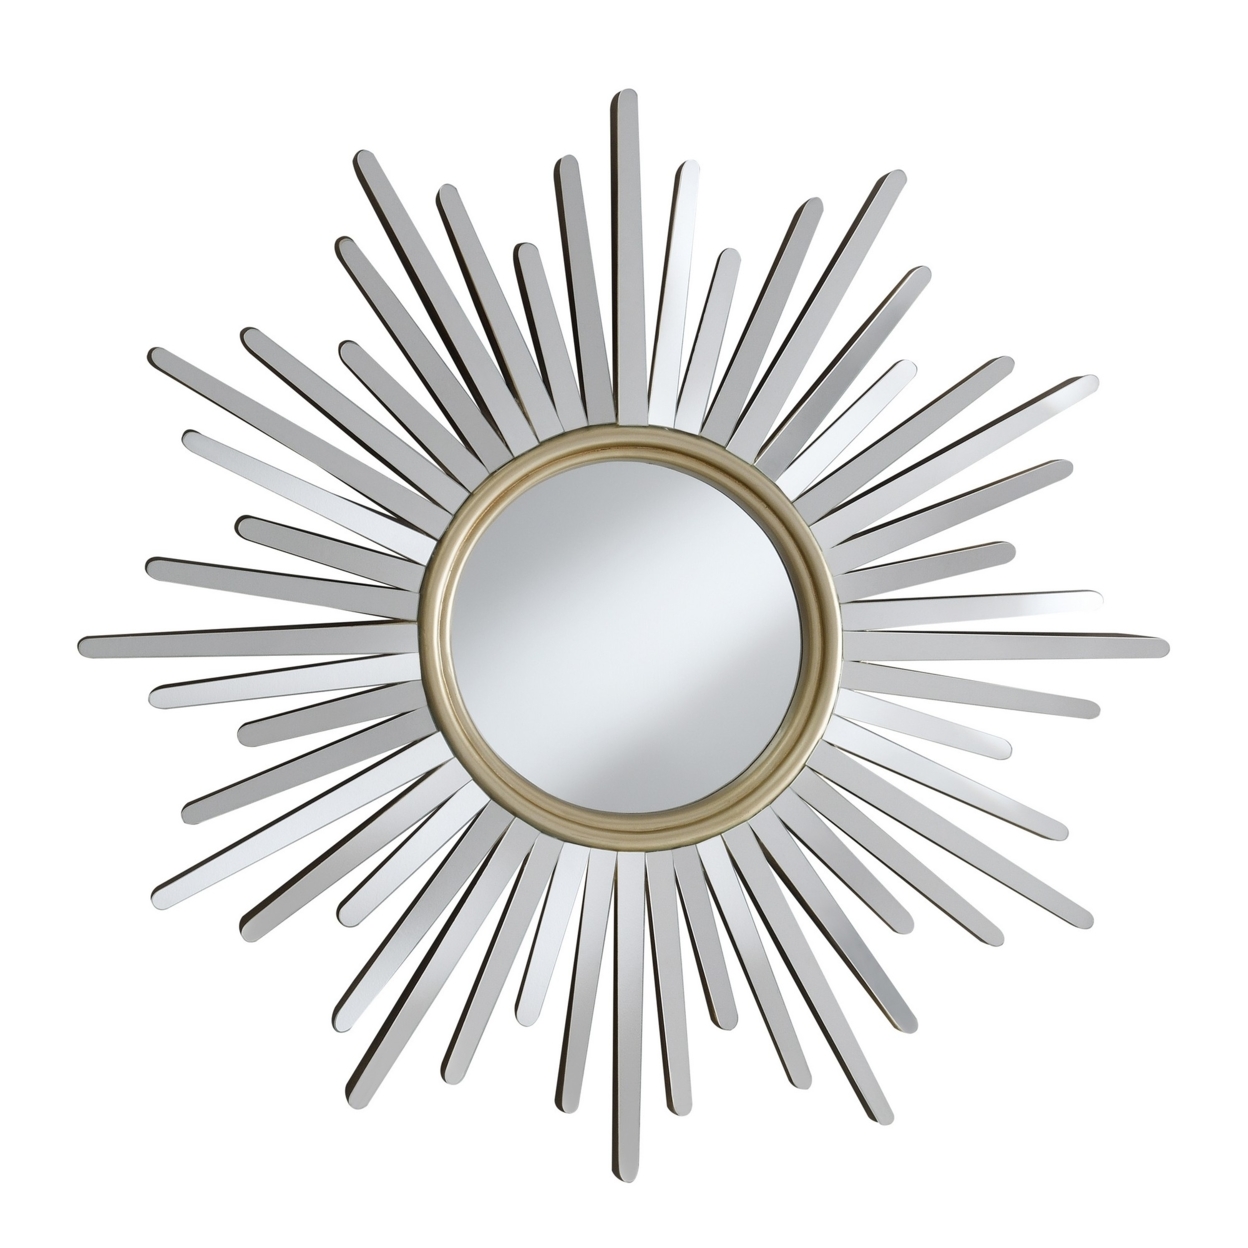 Round Wall Mirror With Sunburst Design, Silver- Saltoro Sherpi